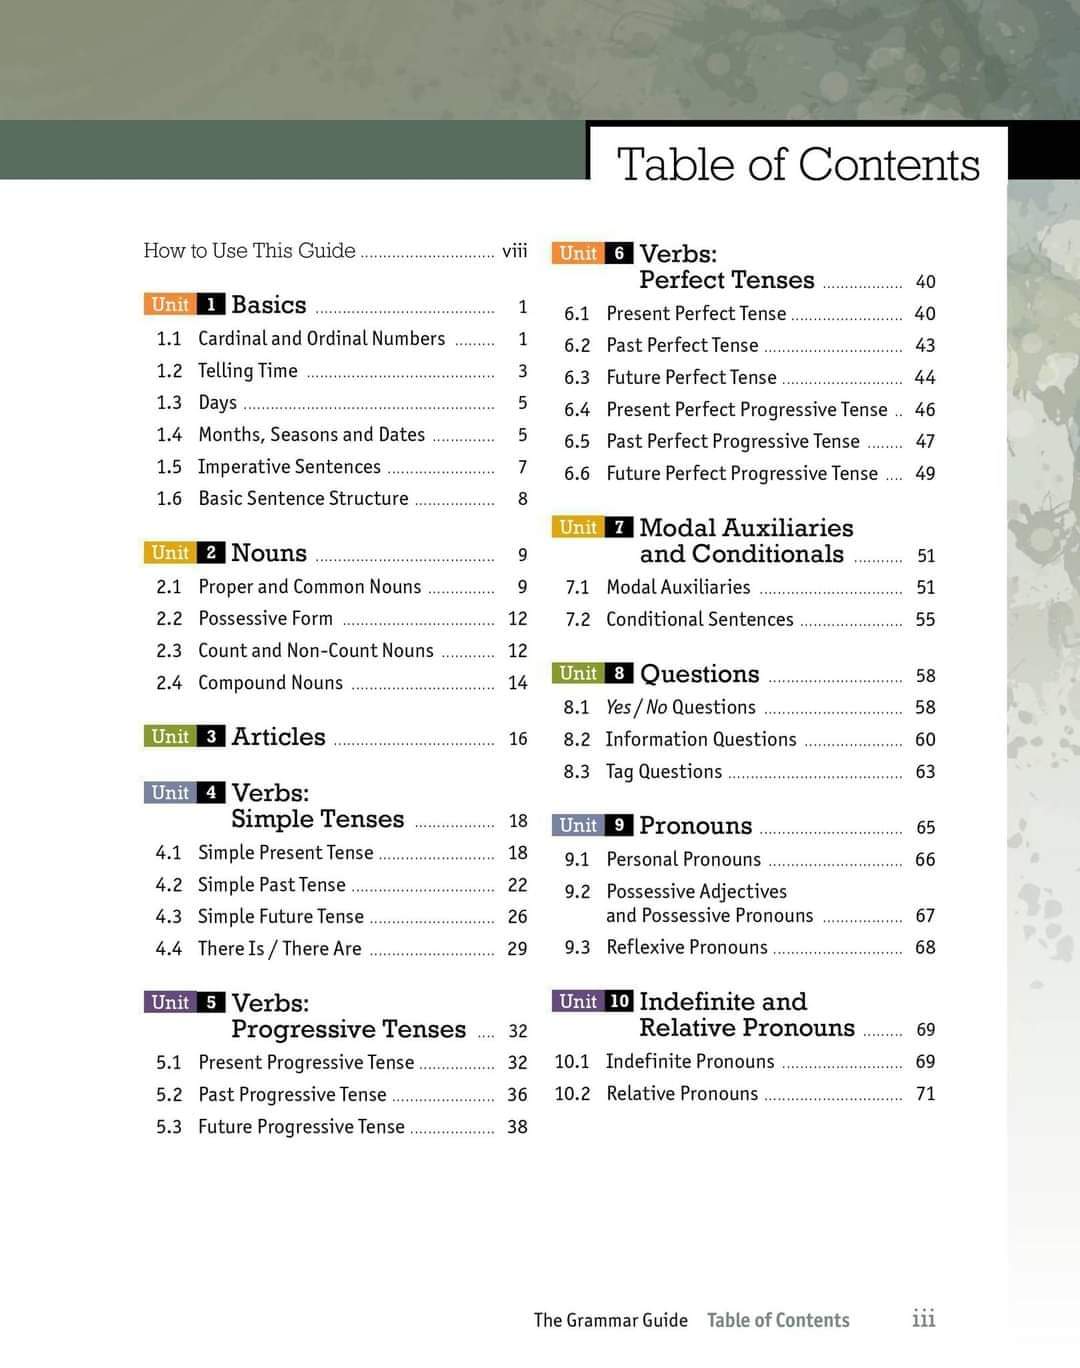 تحميل كتاب جرامر The Grammar Guide كامل pdf - تحميل كتب اللغة الإنجليزية